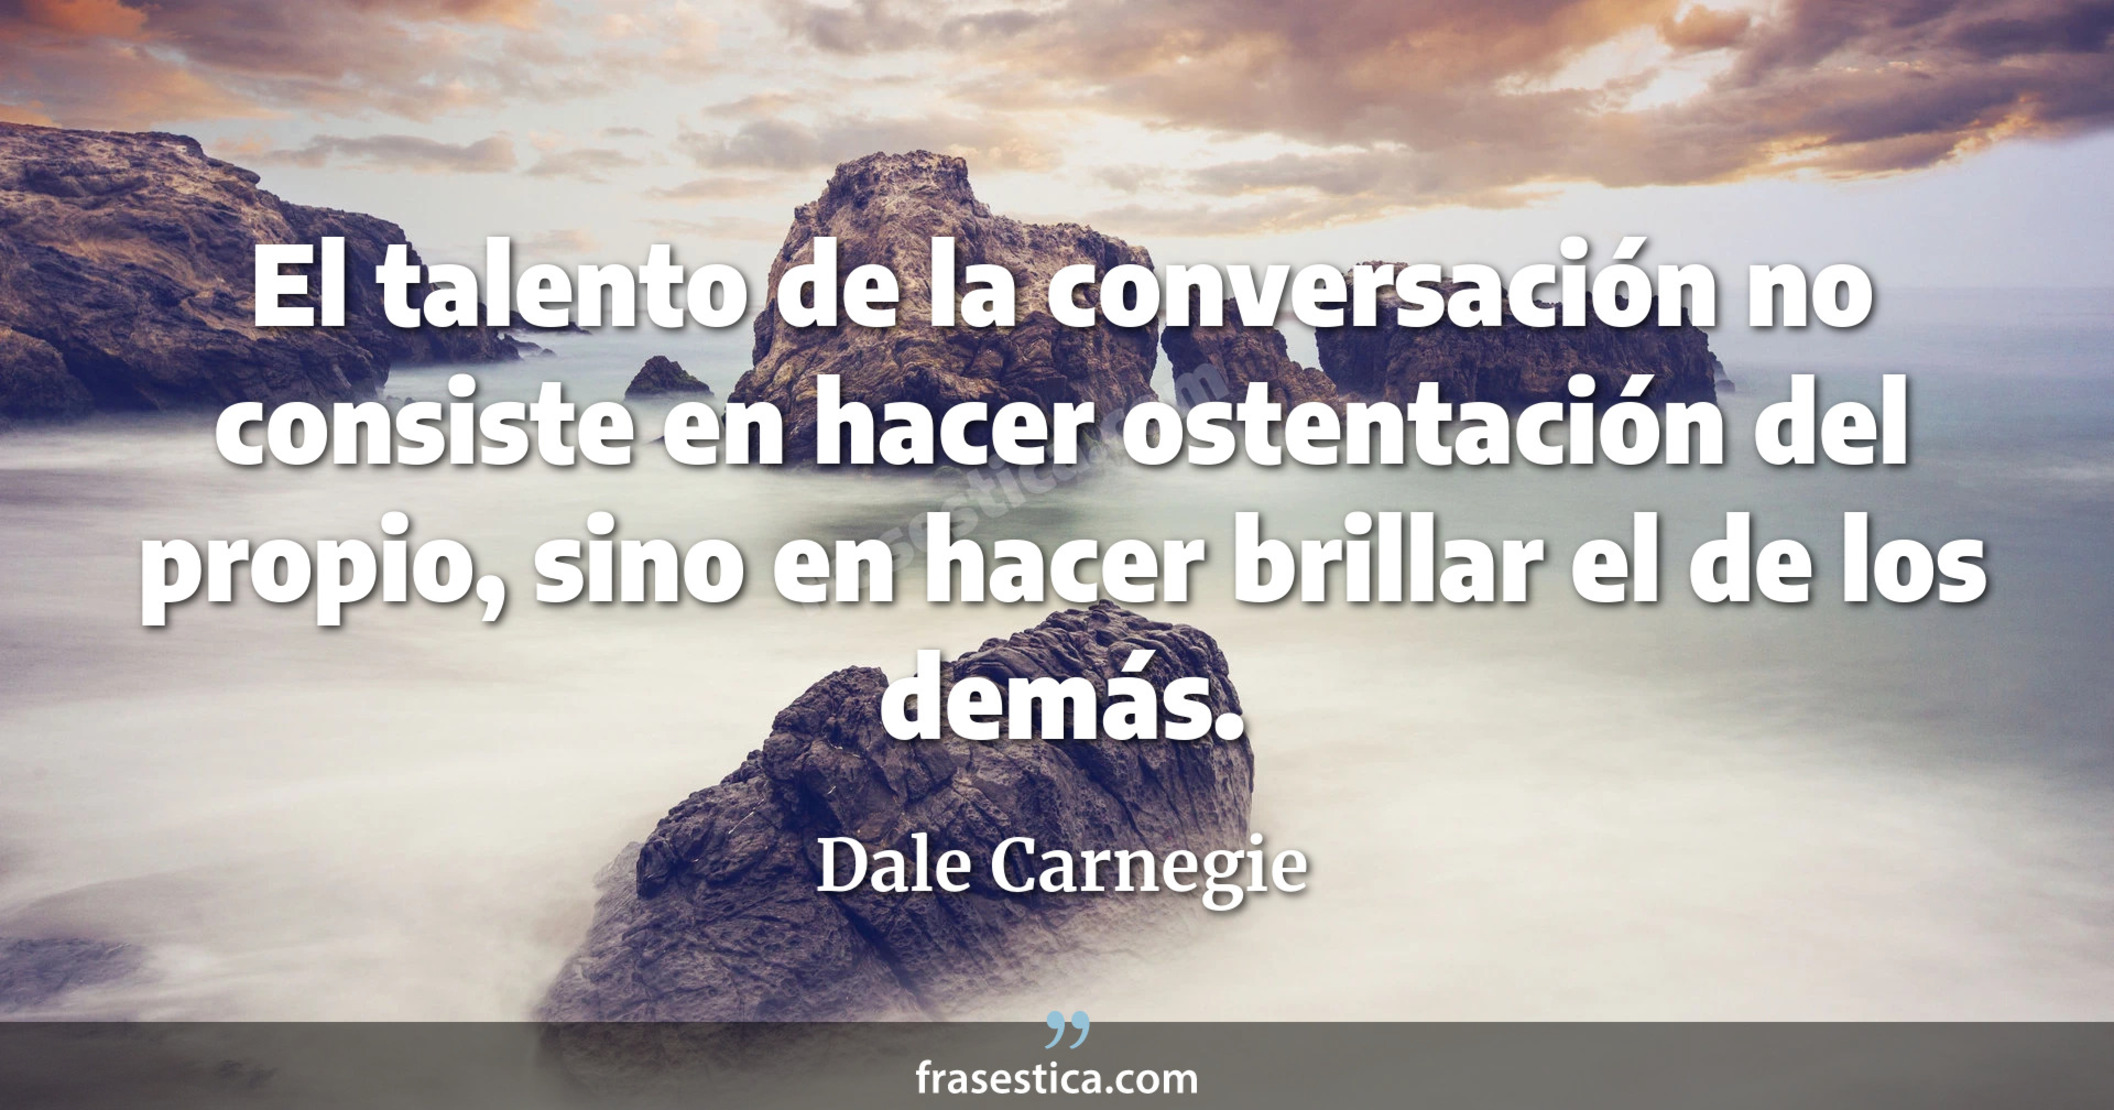 El talento de la conversación no consiste en hacer ostentación del propio, sino en hacer brillar el de los demás. - Dale Carnegie